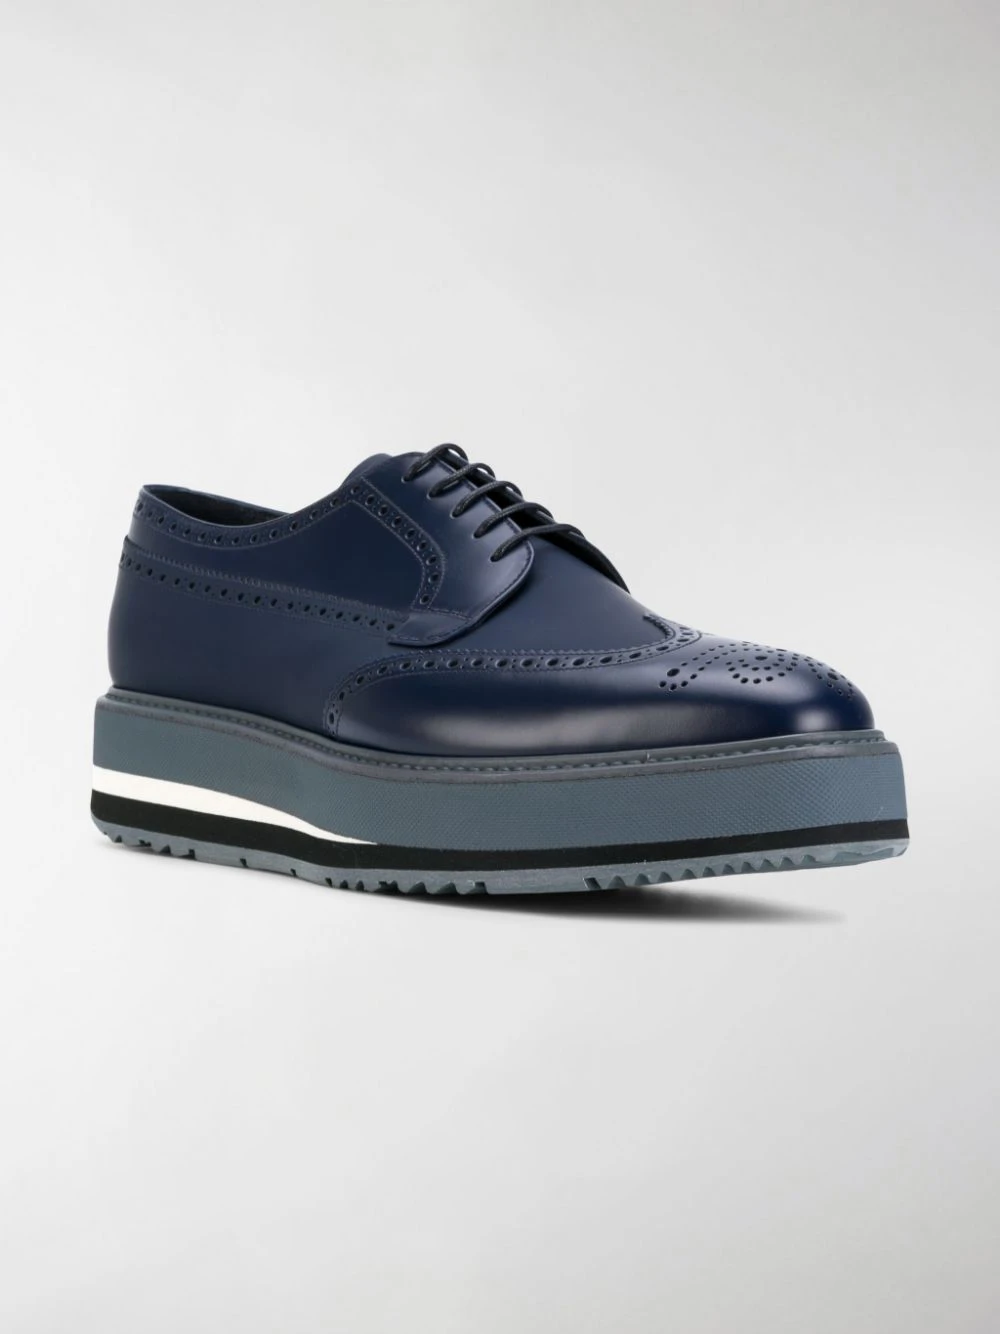 PRADA 男士深蓝色休闲皮鞋 2EG015-3H6T-F0216 商品